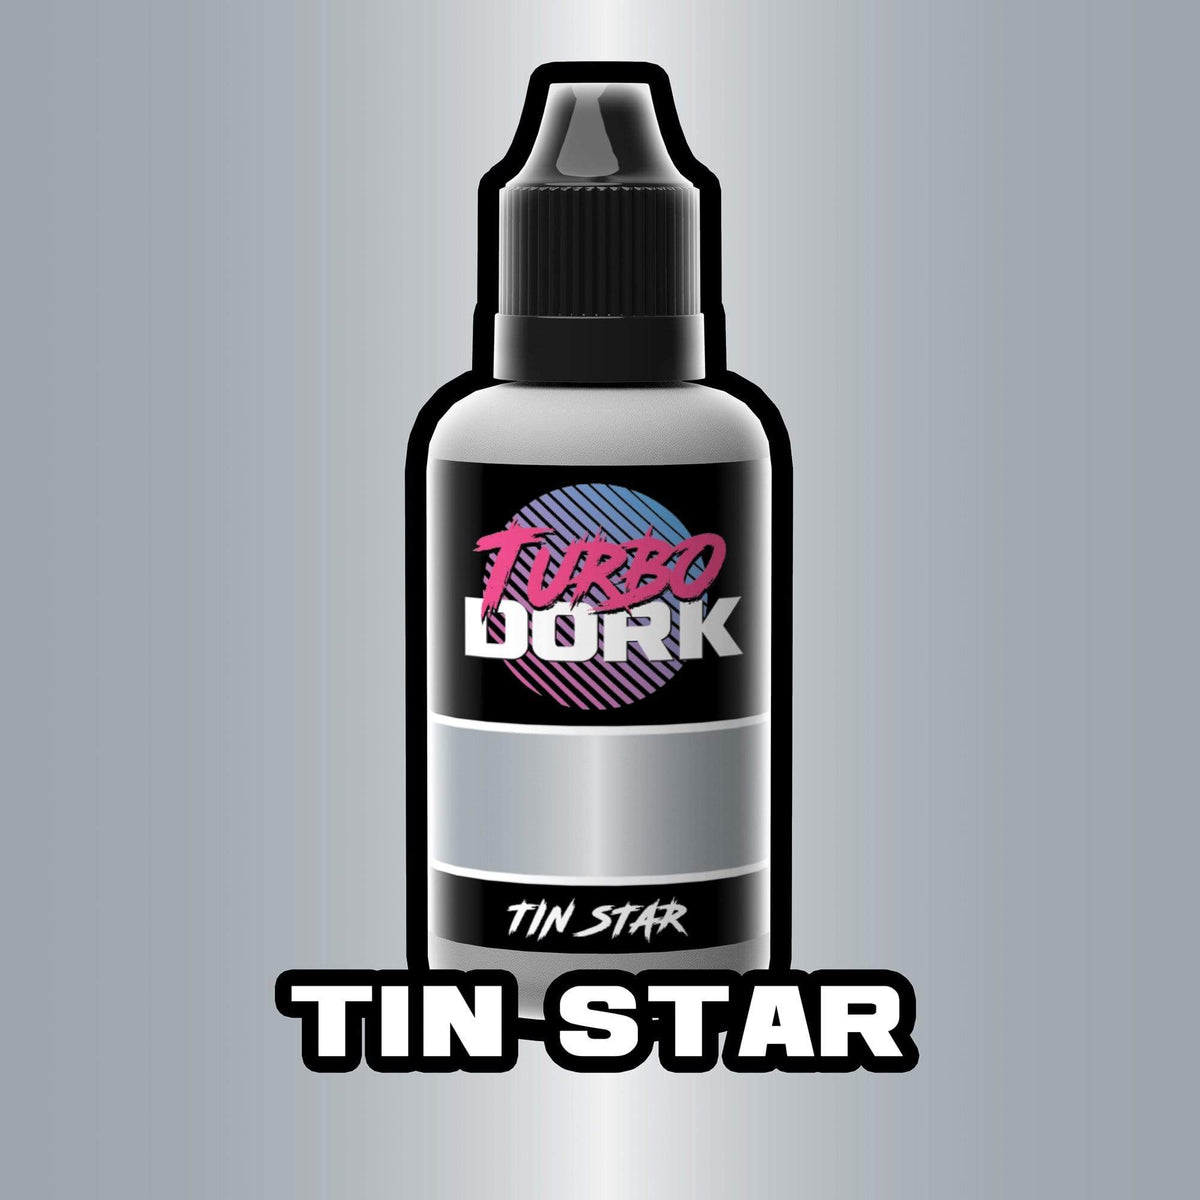 Tin Star Metallic Acrylic Paint Metallic Turbo Dork Exit 23 Games Tin Star Metallic Acrylic Paint